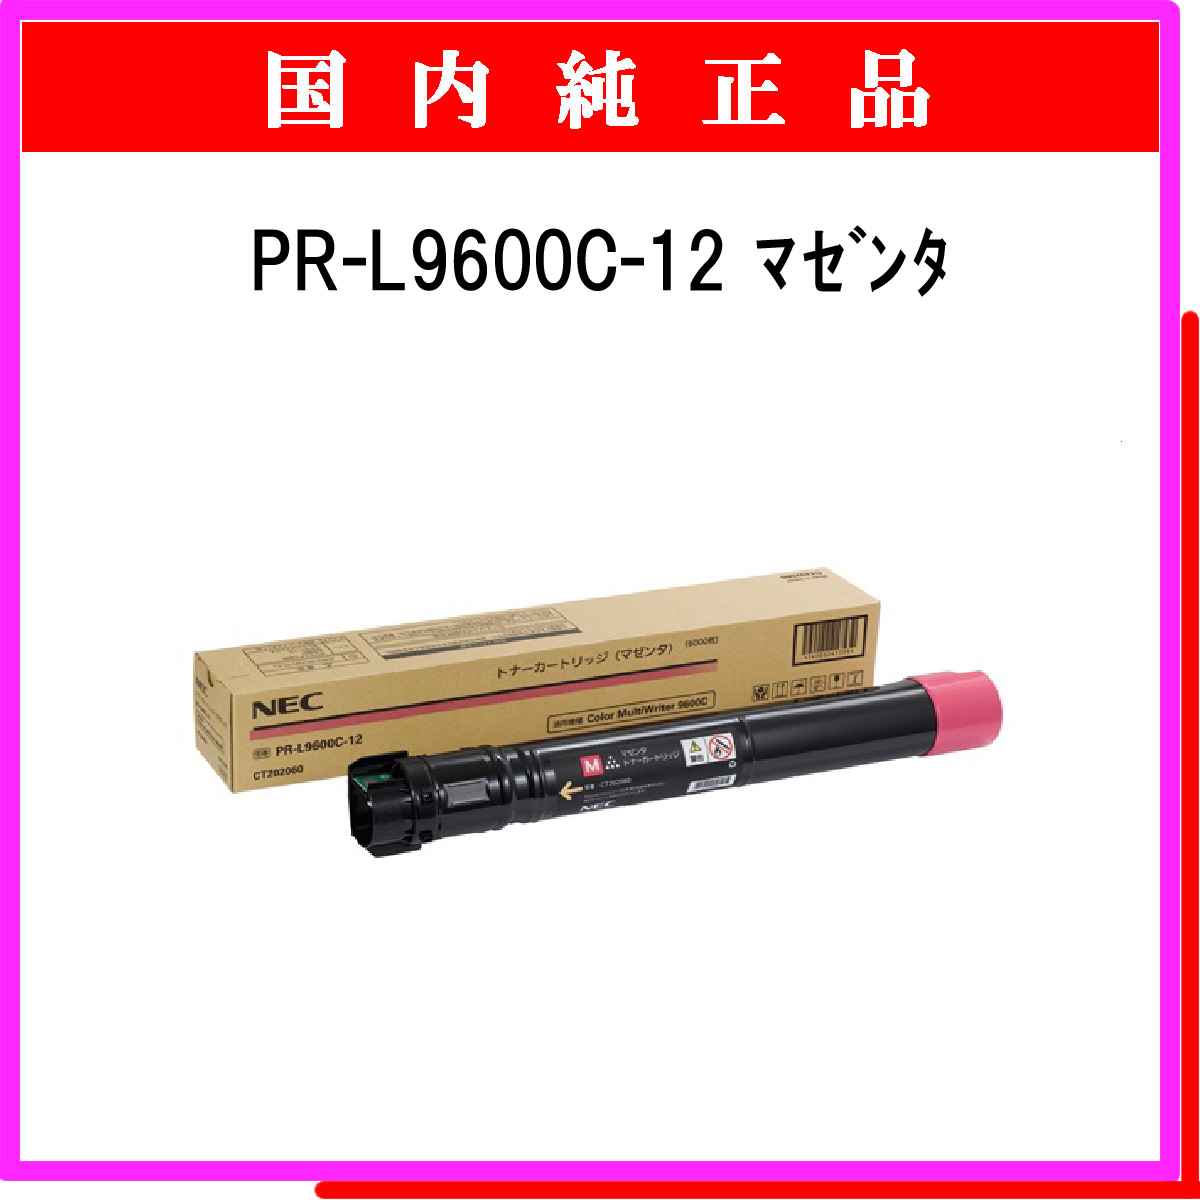 PR-L9600C-12 純正